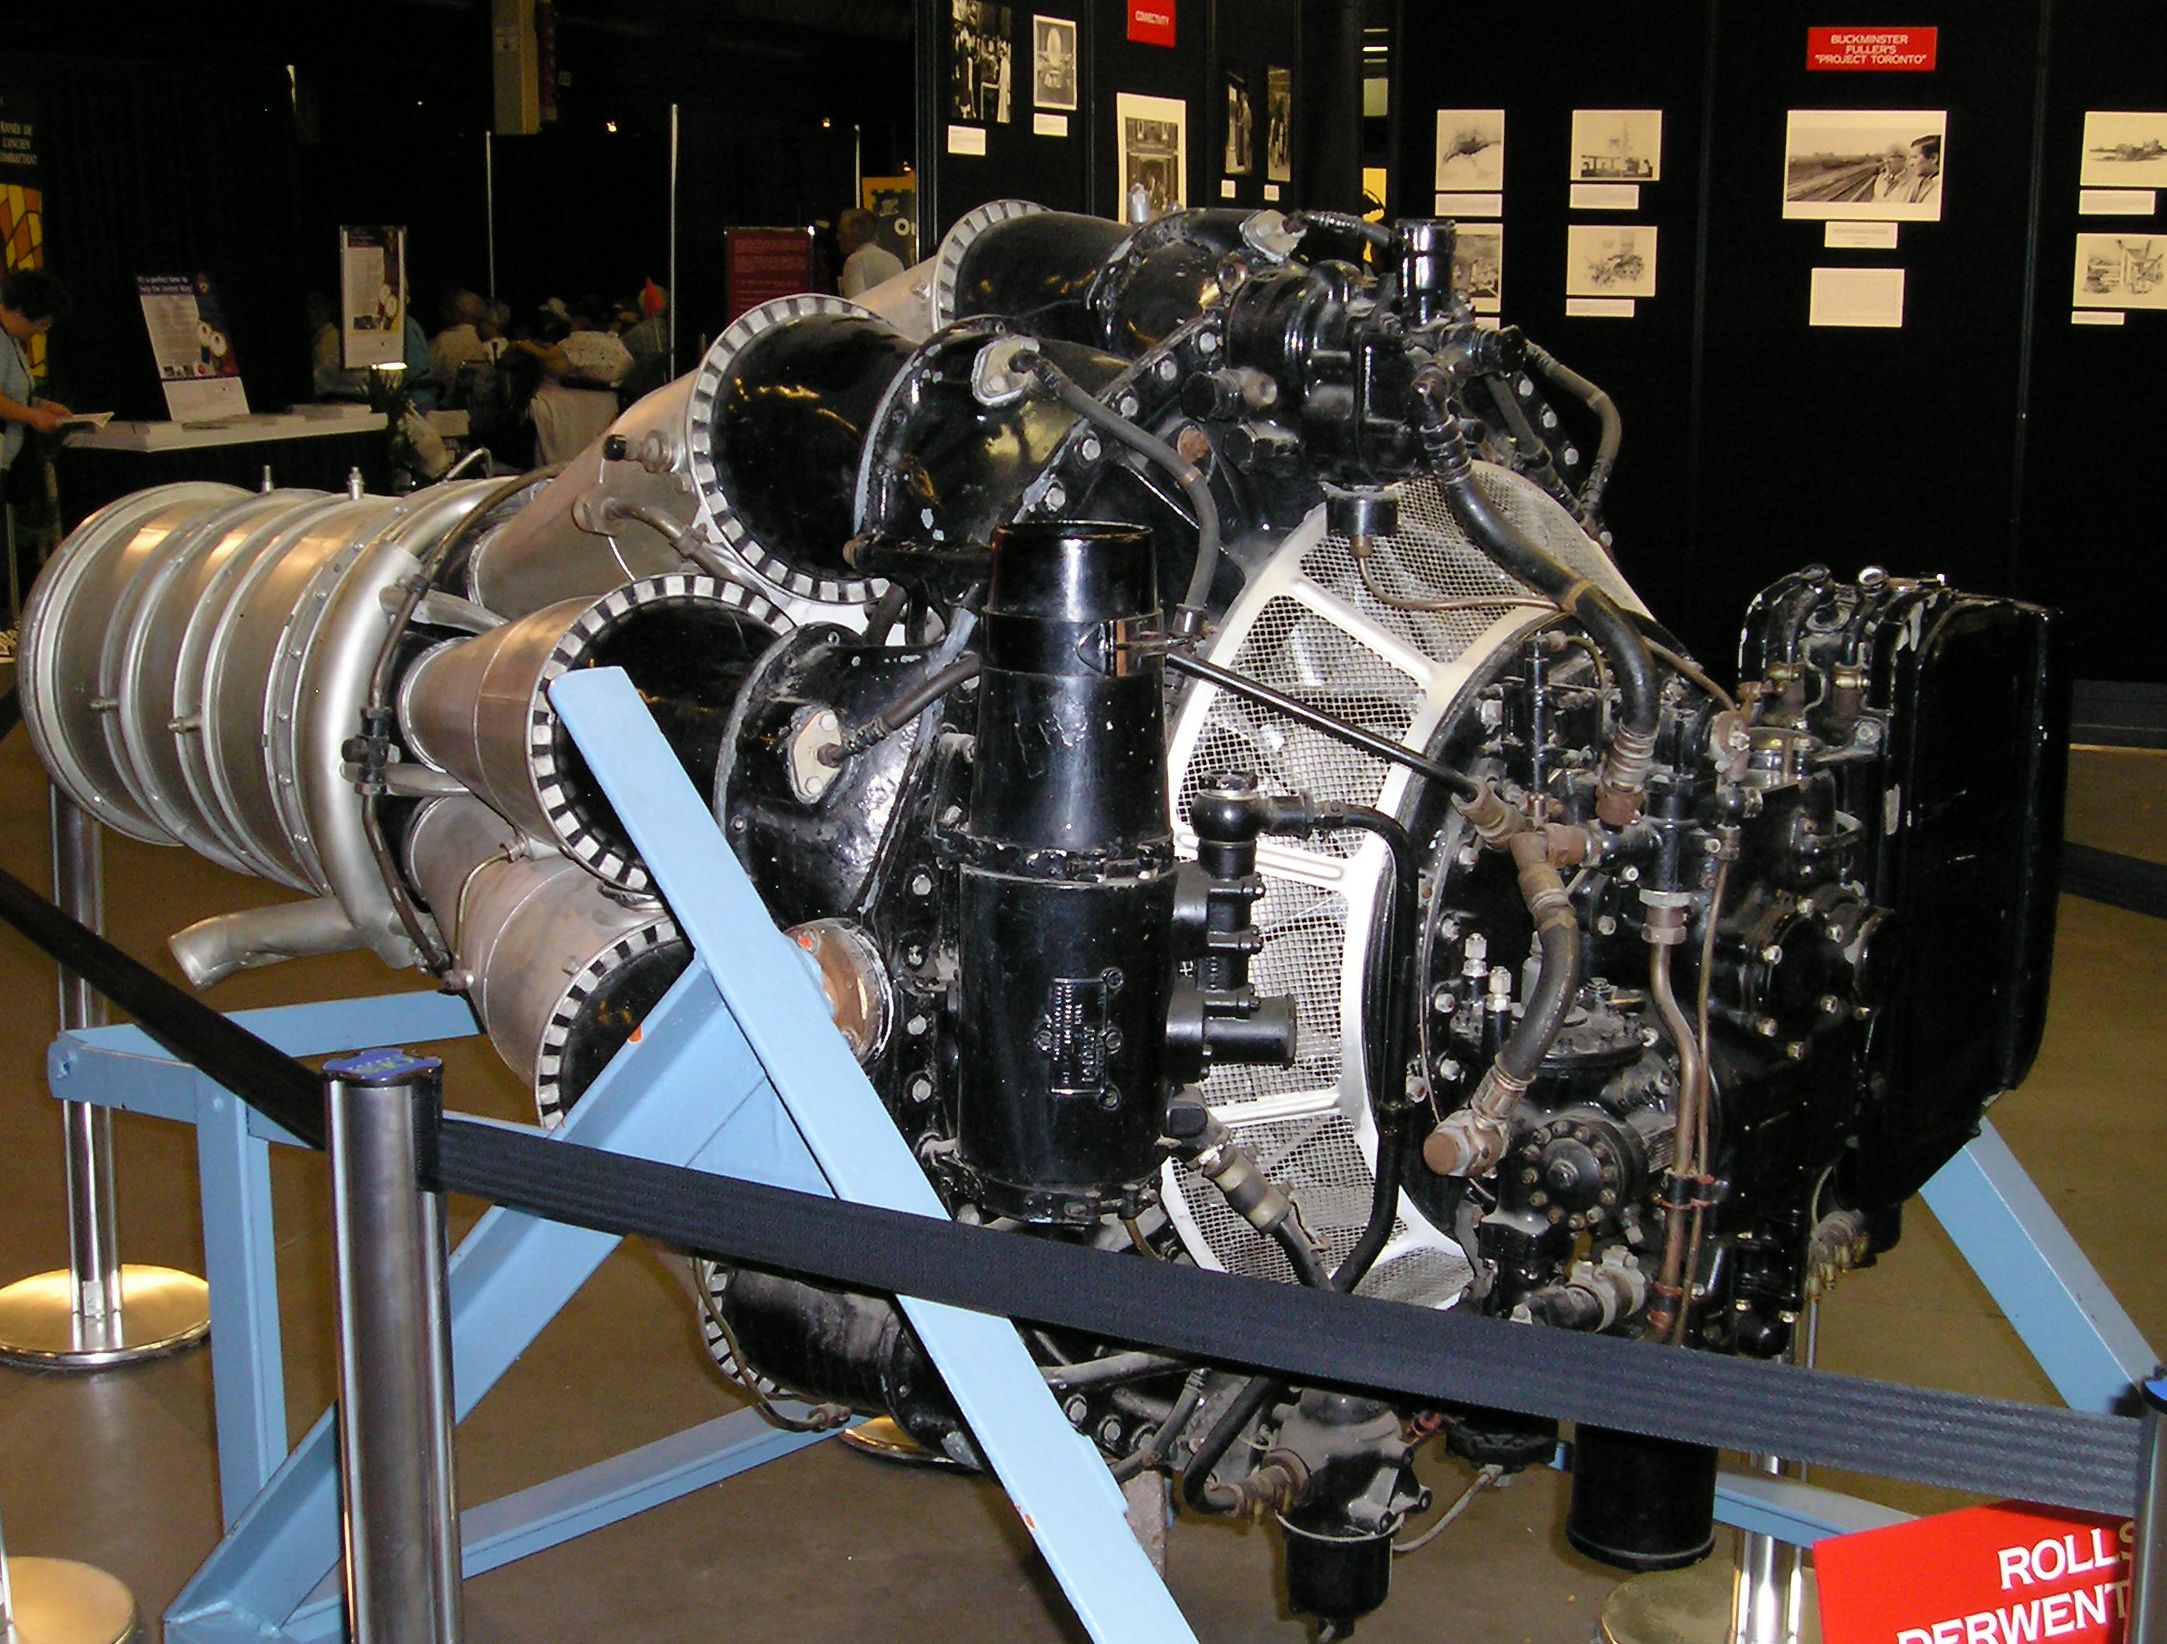 A Rolls Royce Derwent Jet Engine.